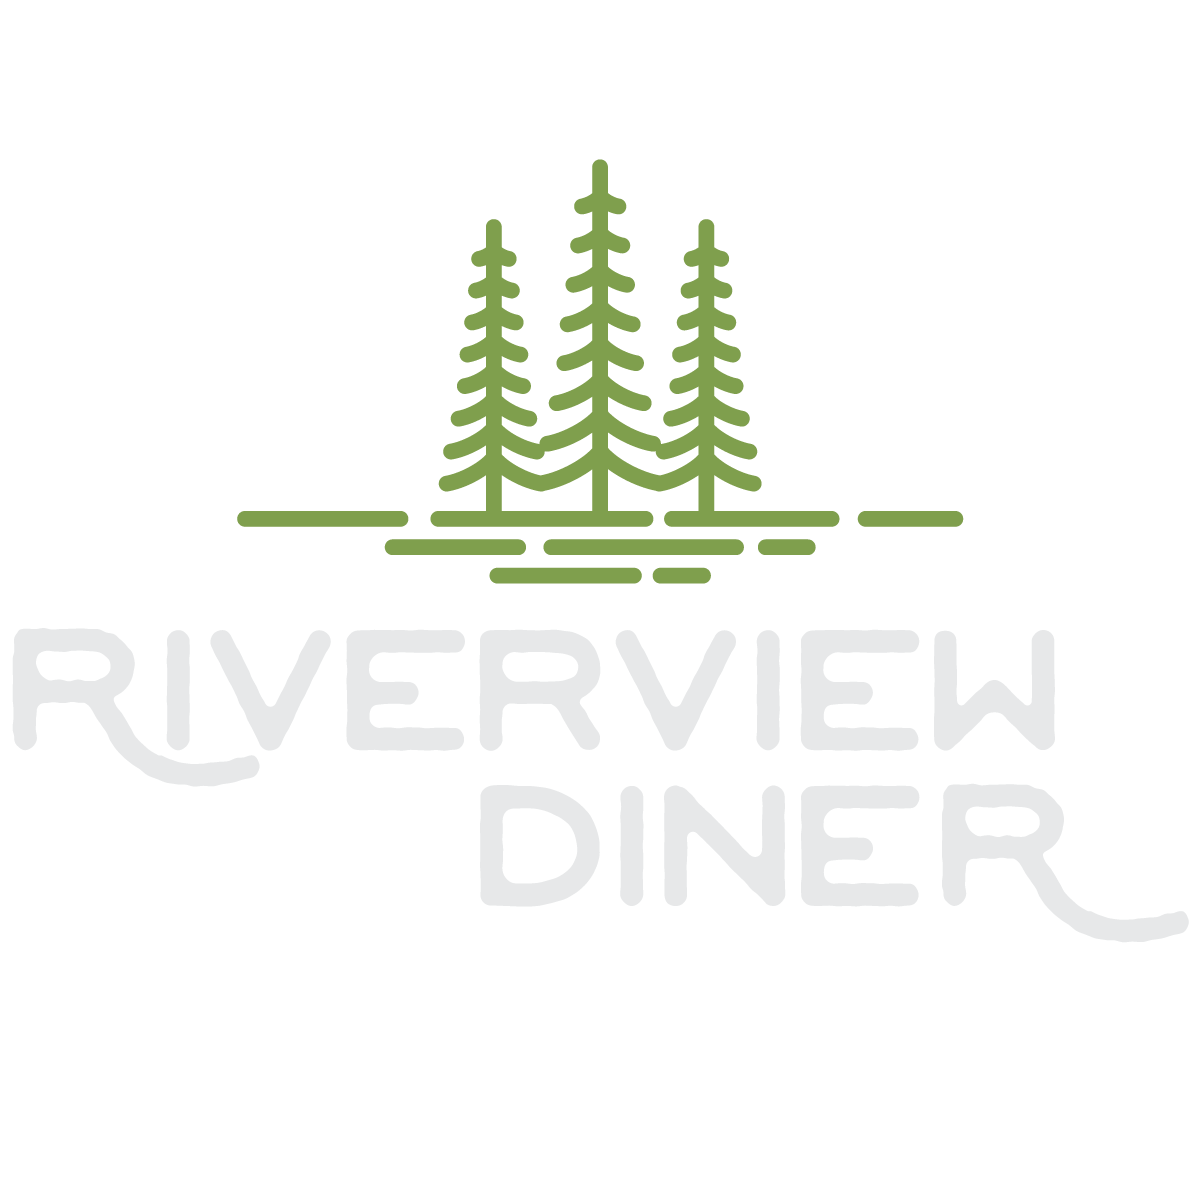 Riverview Diner